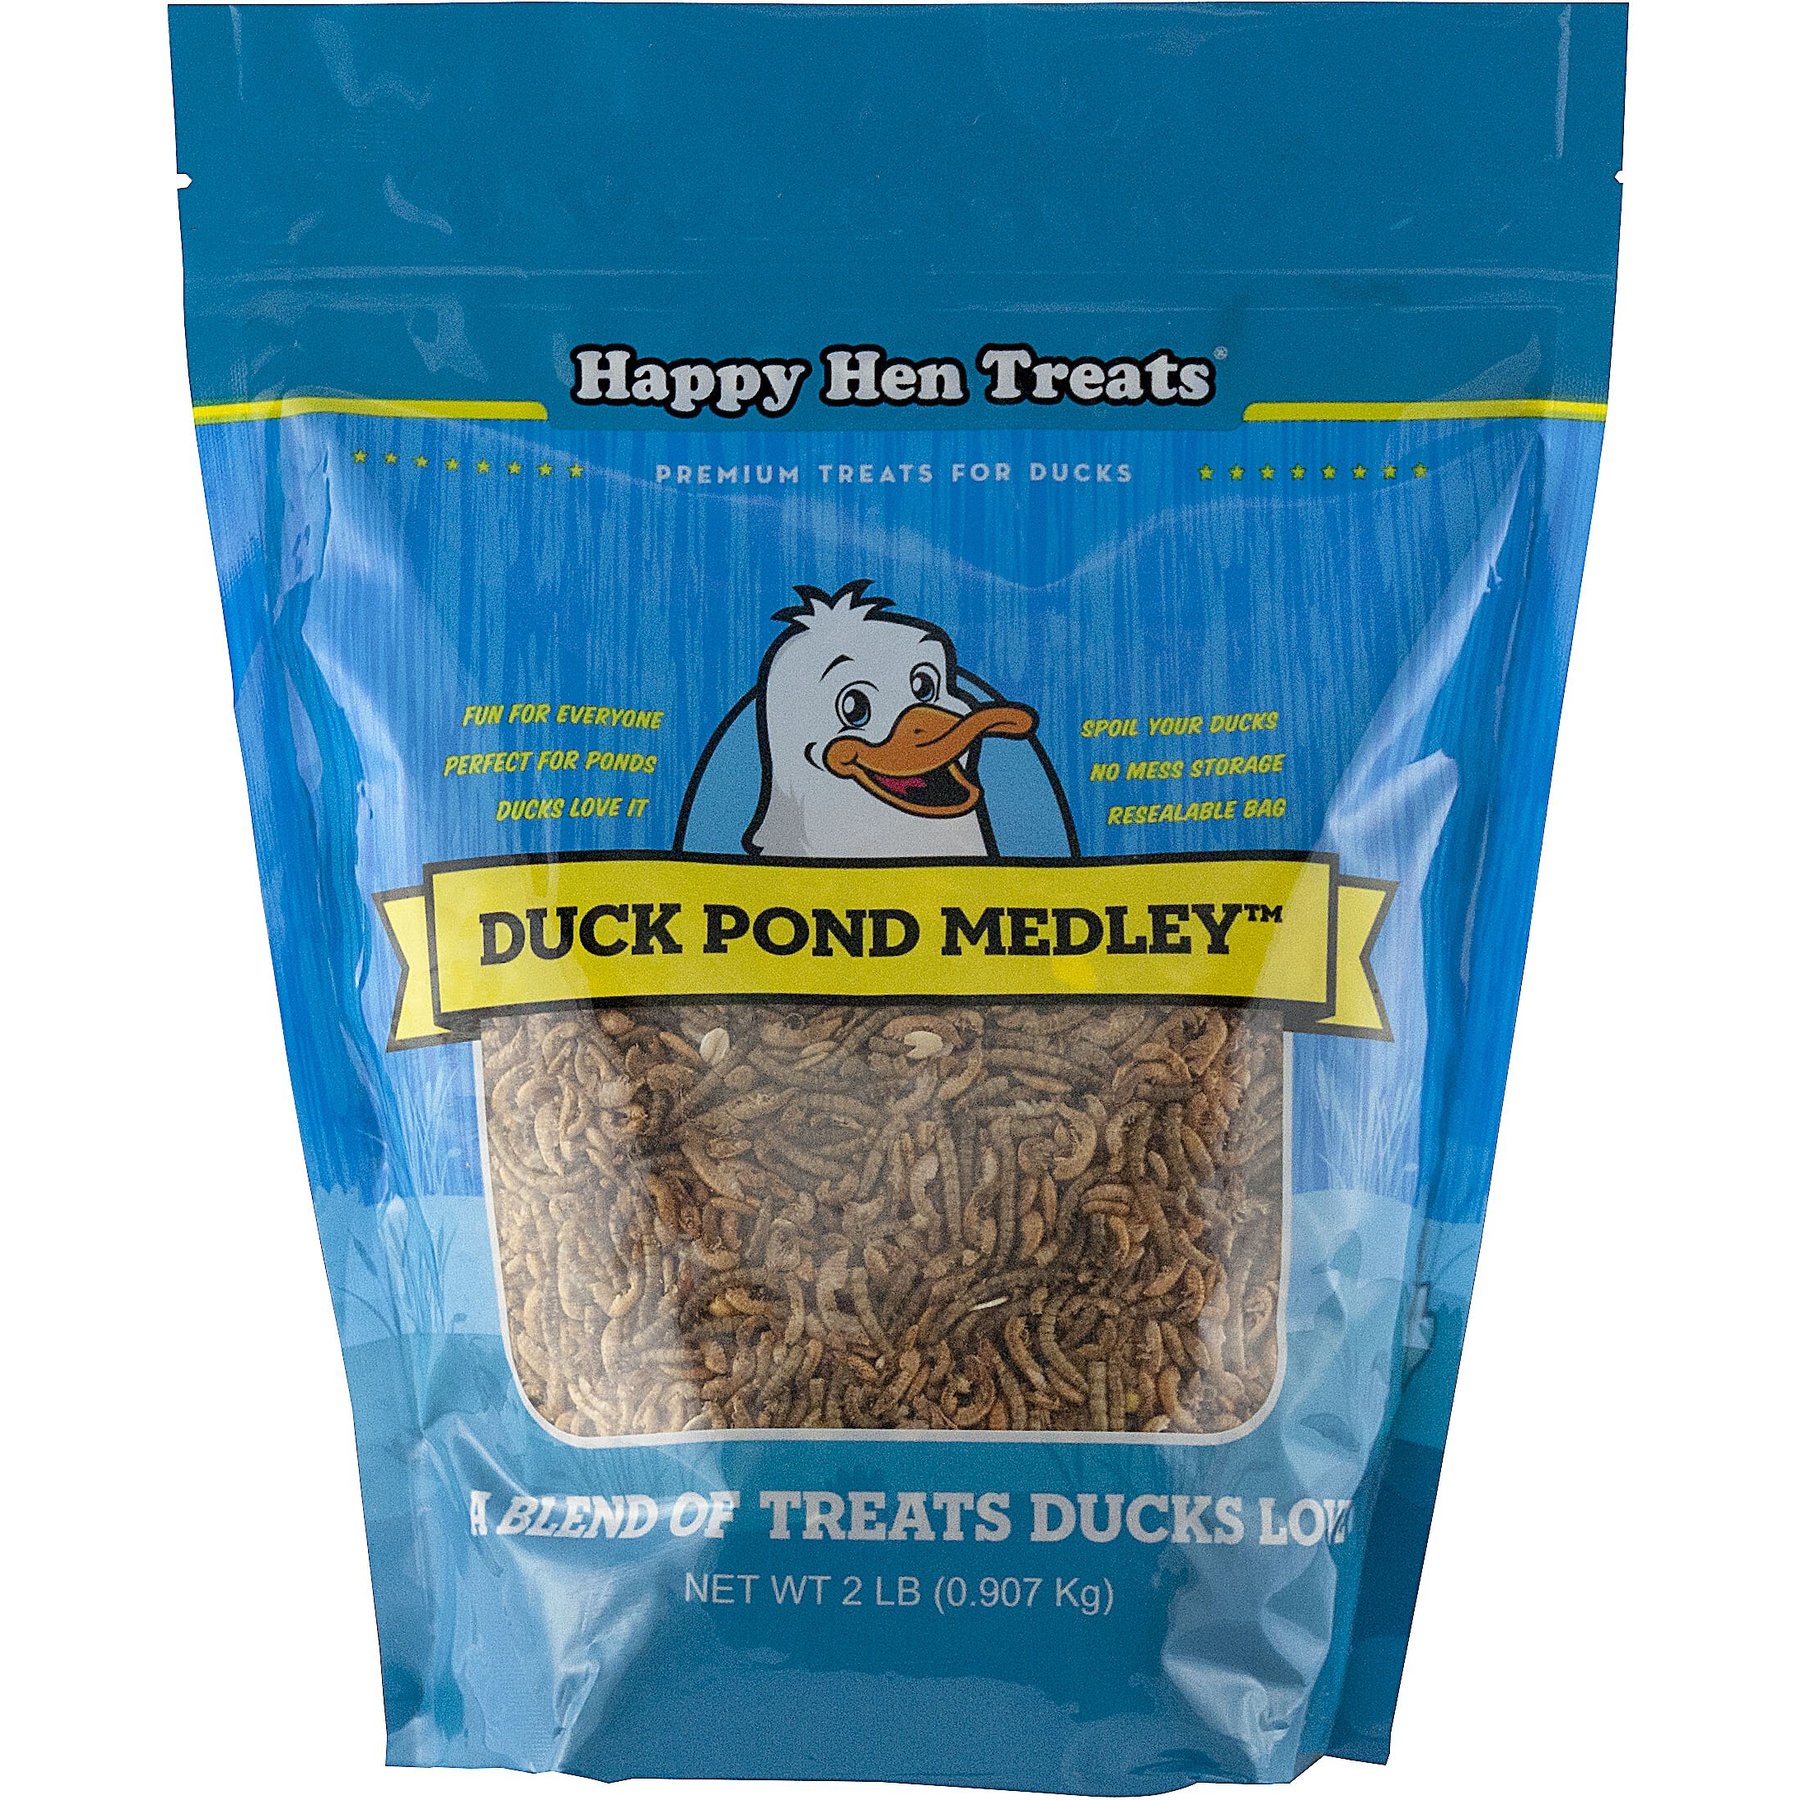 Happy Hen Treats Pond Medley Duck Treats